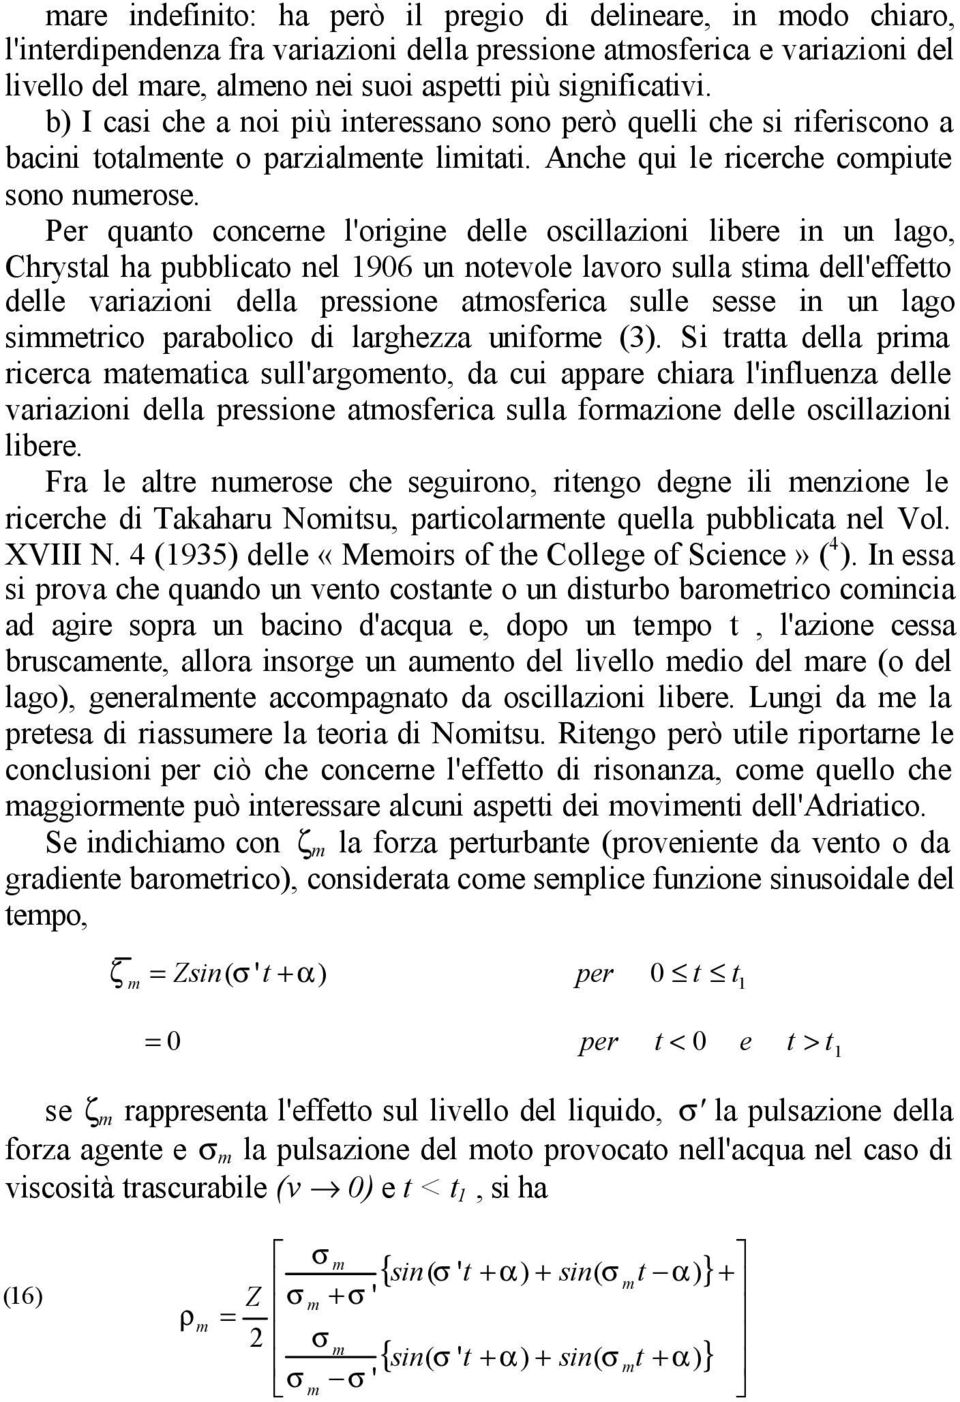 Per quano concerne l'origine delle oscillaioni libere in un lago, Chrysal ha pubblicao nel 906 un noevole lavoro sulla sima dell'effeo delle variaioni della pressione amosferica sulle sesse in un